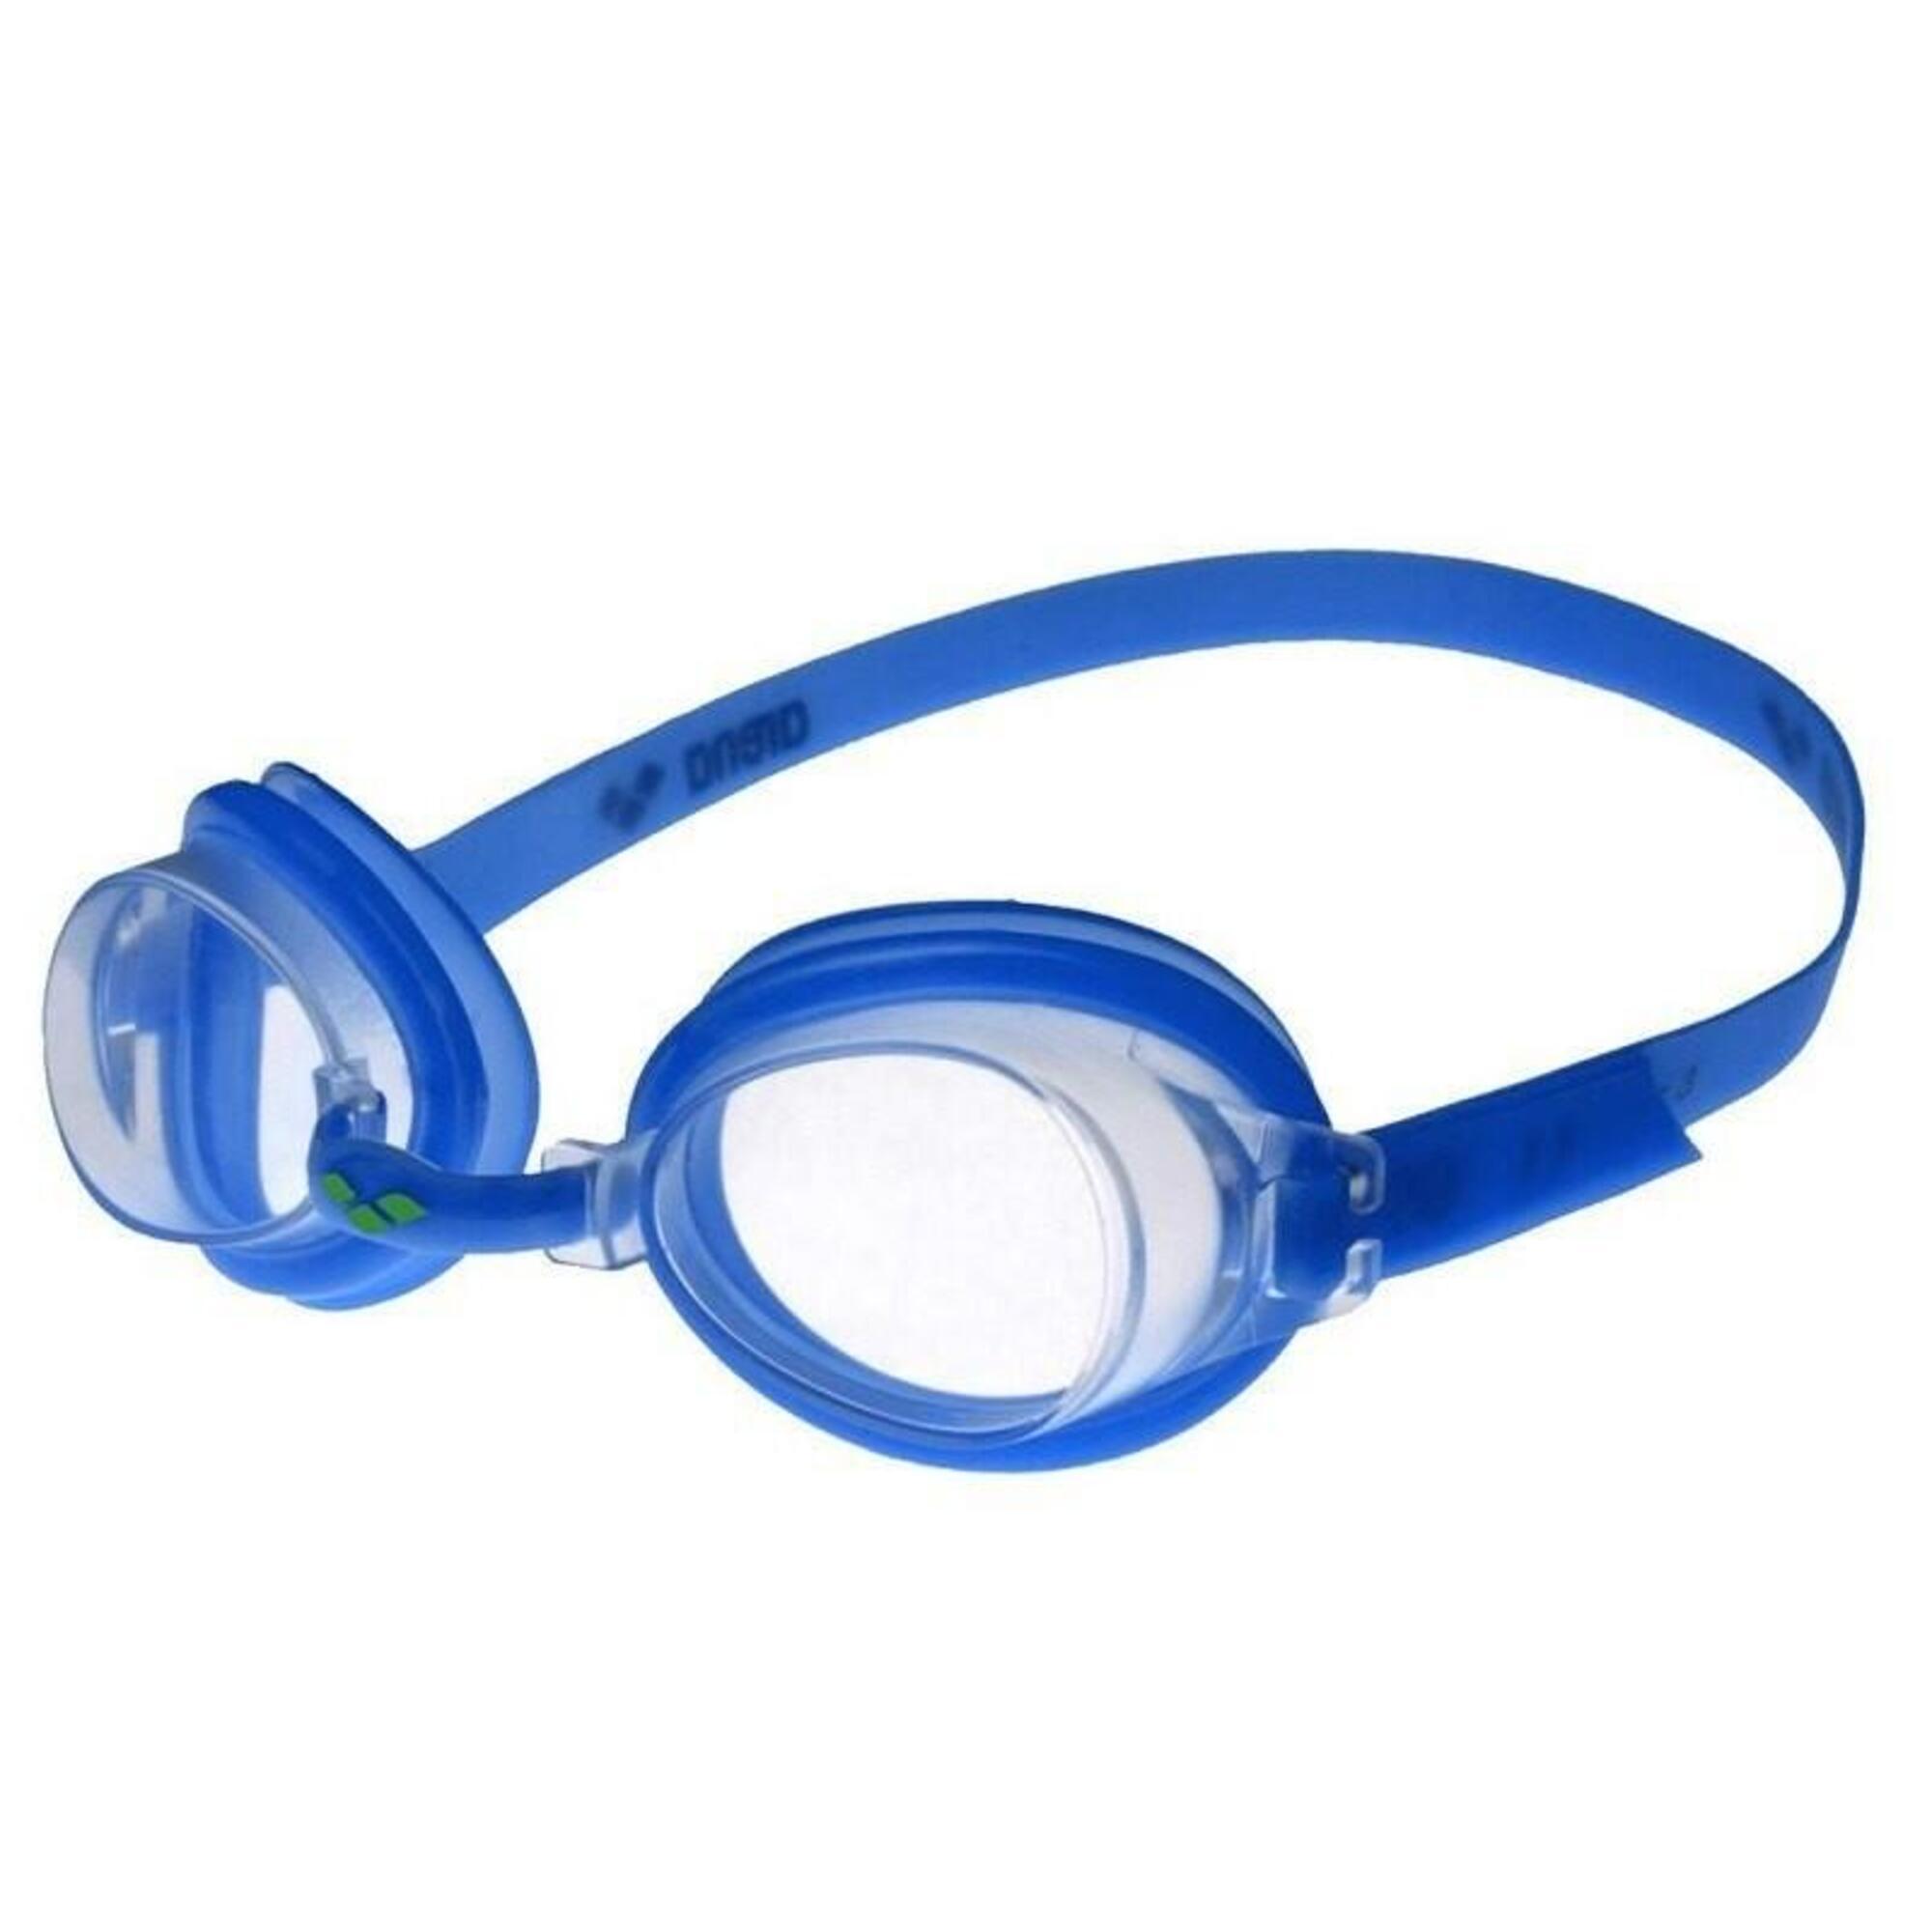 Okulary do pływania juniorskie Arena Bubble Junior 3